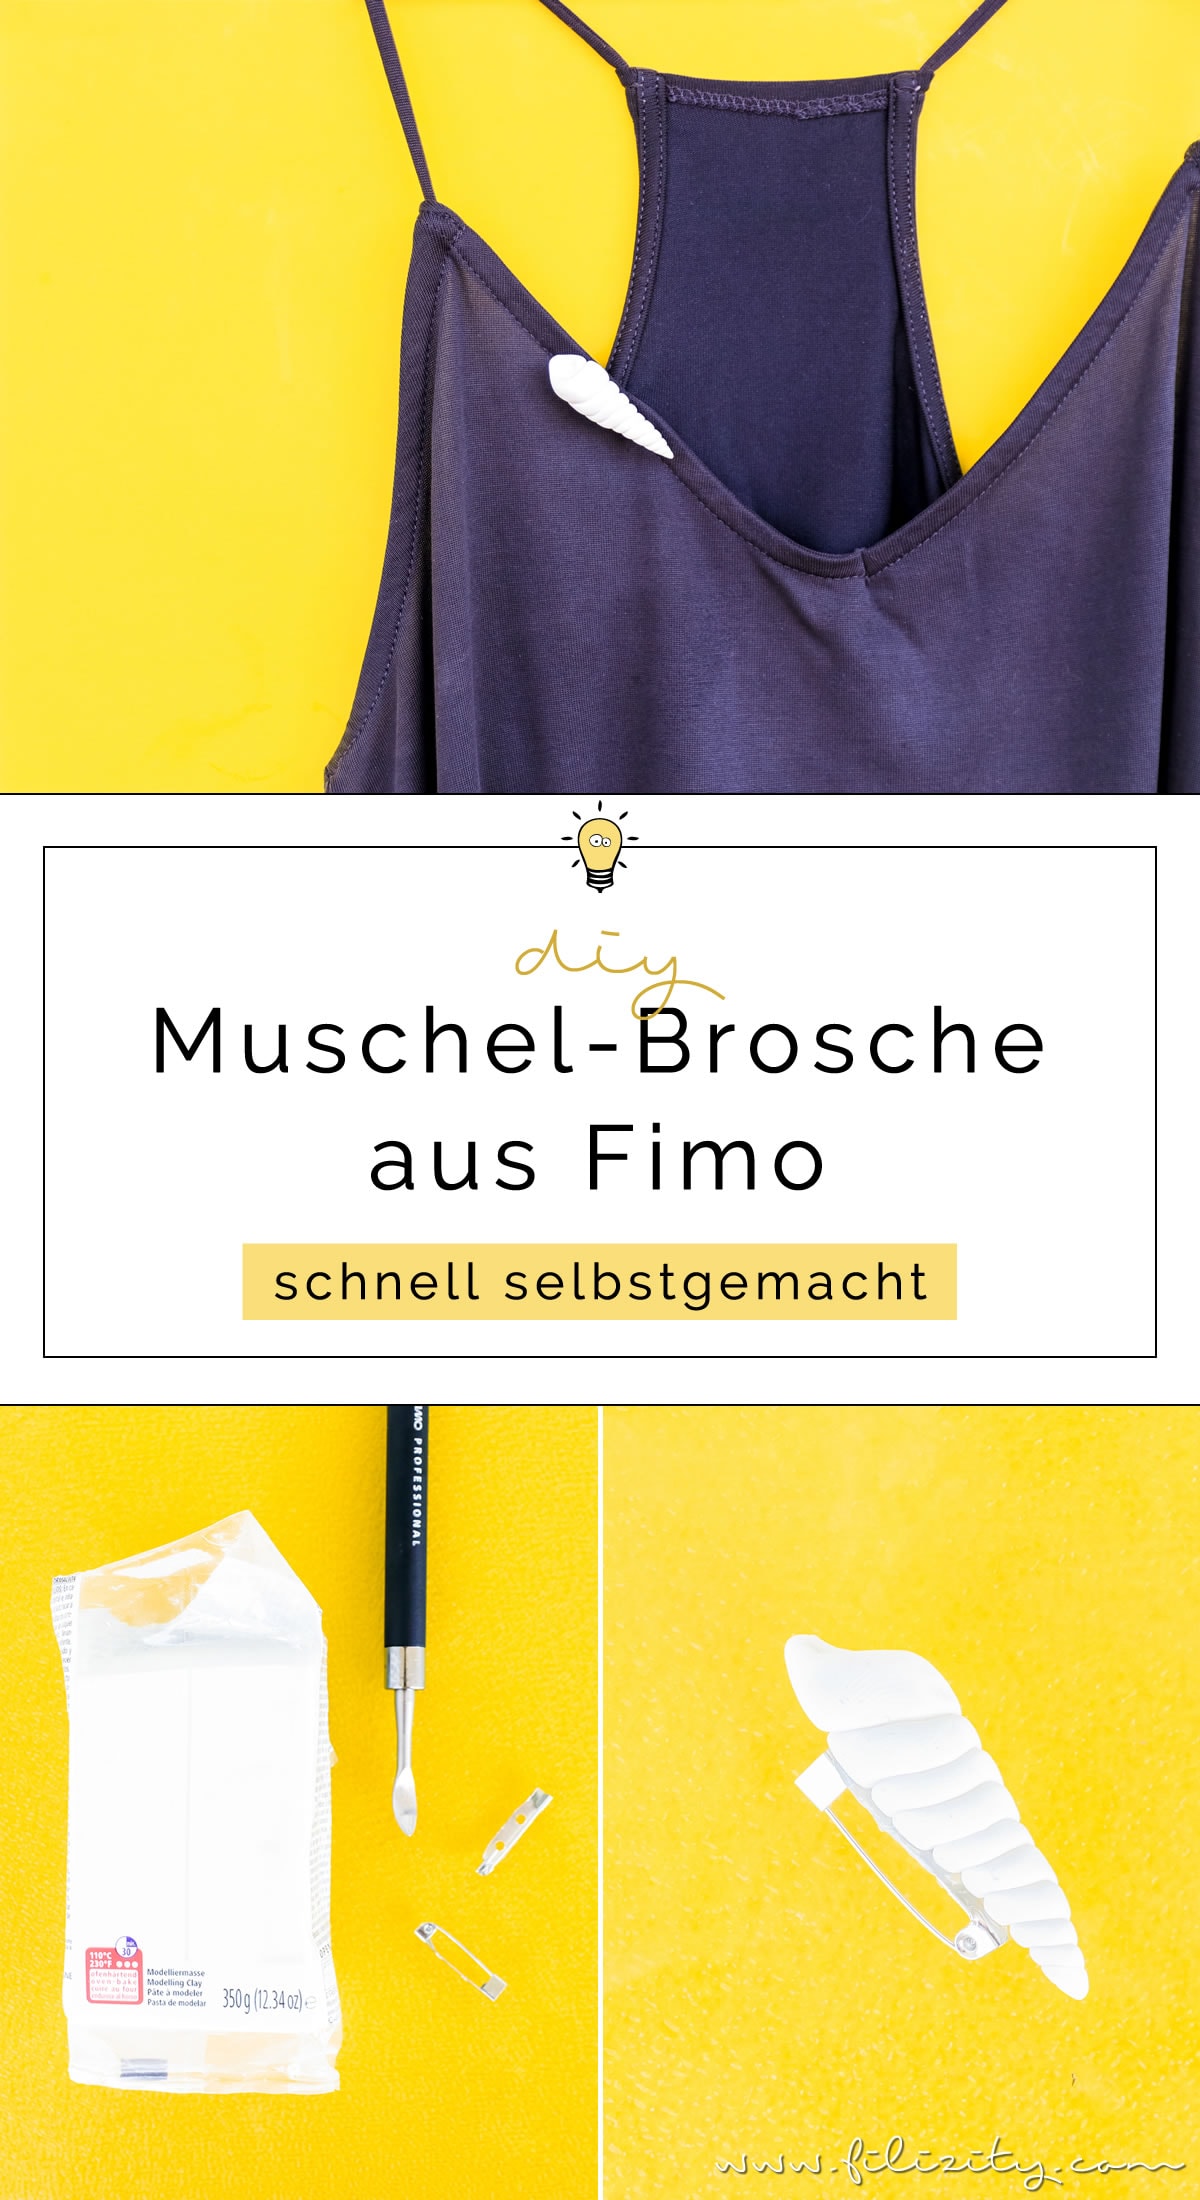 Kleidung aufpeppen: DIY Muschel-Brosche aus Fimo oder Kaltporzellan selber machen | Sommer-Schmuck basteln | Filizity.com - DIY-Blog aus dem Rheinland #myfimo #fimo #kaltporzellan #sommer